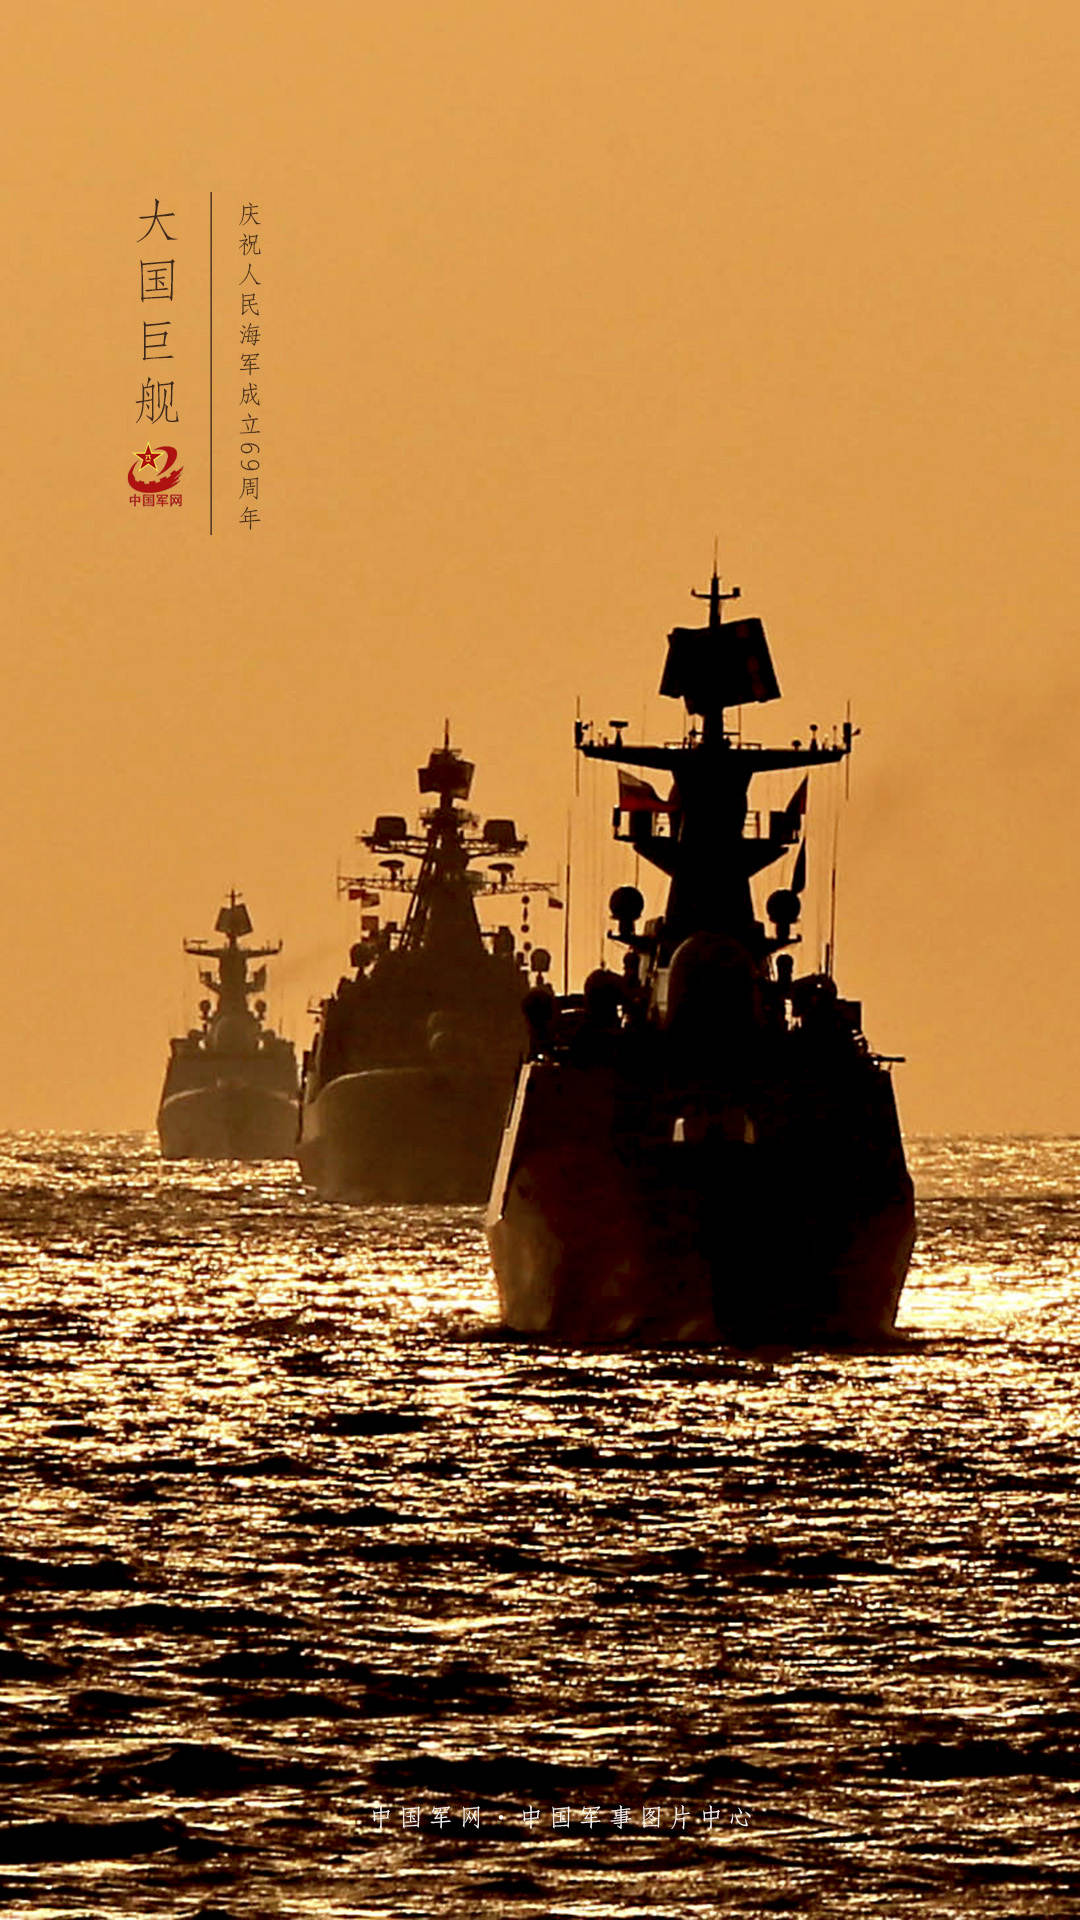 军事 海军 舰船 中国海军 辽宁号 军事天地壁纸(其他静态壁纸) - 静态壁纸下载 - 元气壁纸